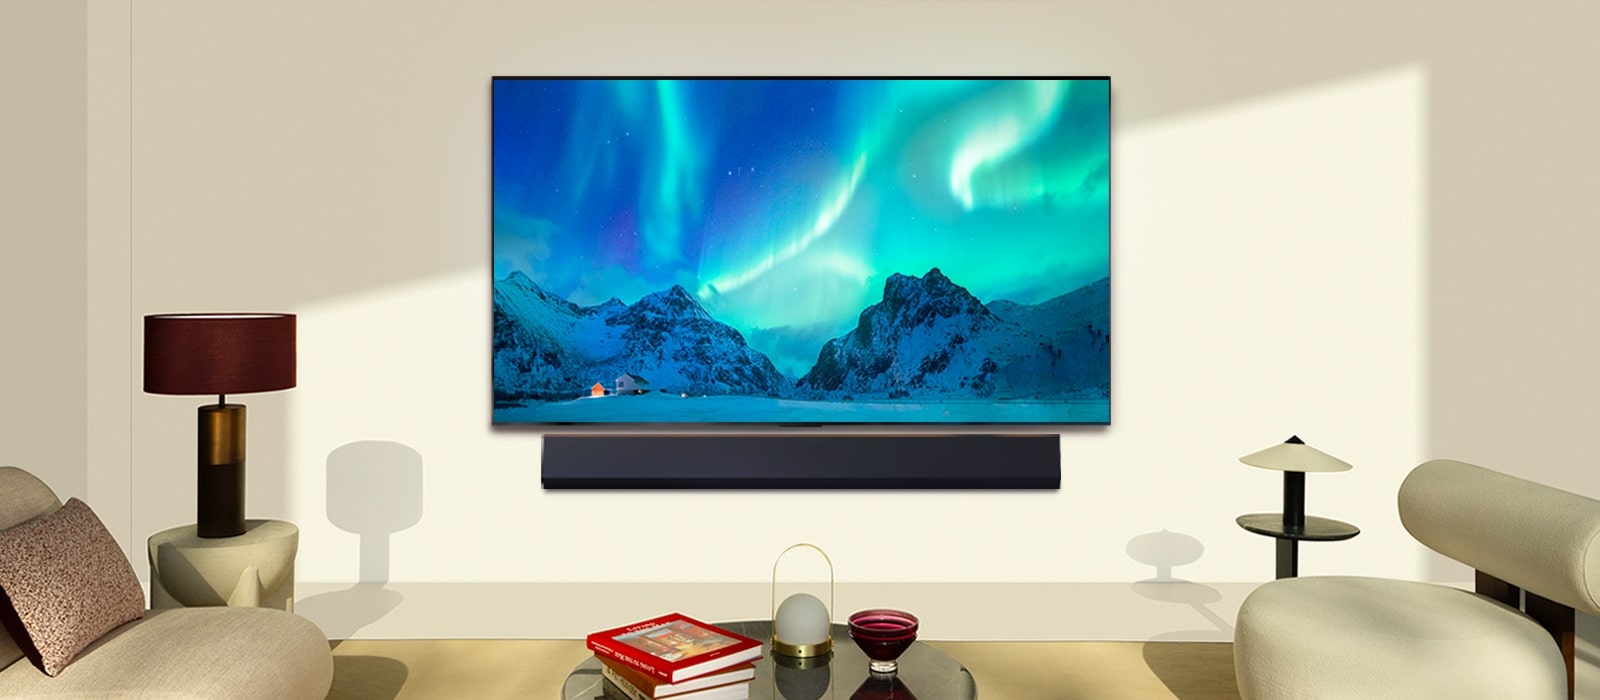 TV OLED LG et la barre de son LG dans un espace de vie moderne pendant la journée. L’image à l’écran des aurores boréales s’affiche avec des niveaux de luminosité idéaux.